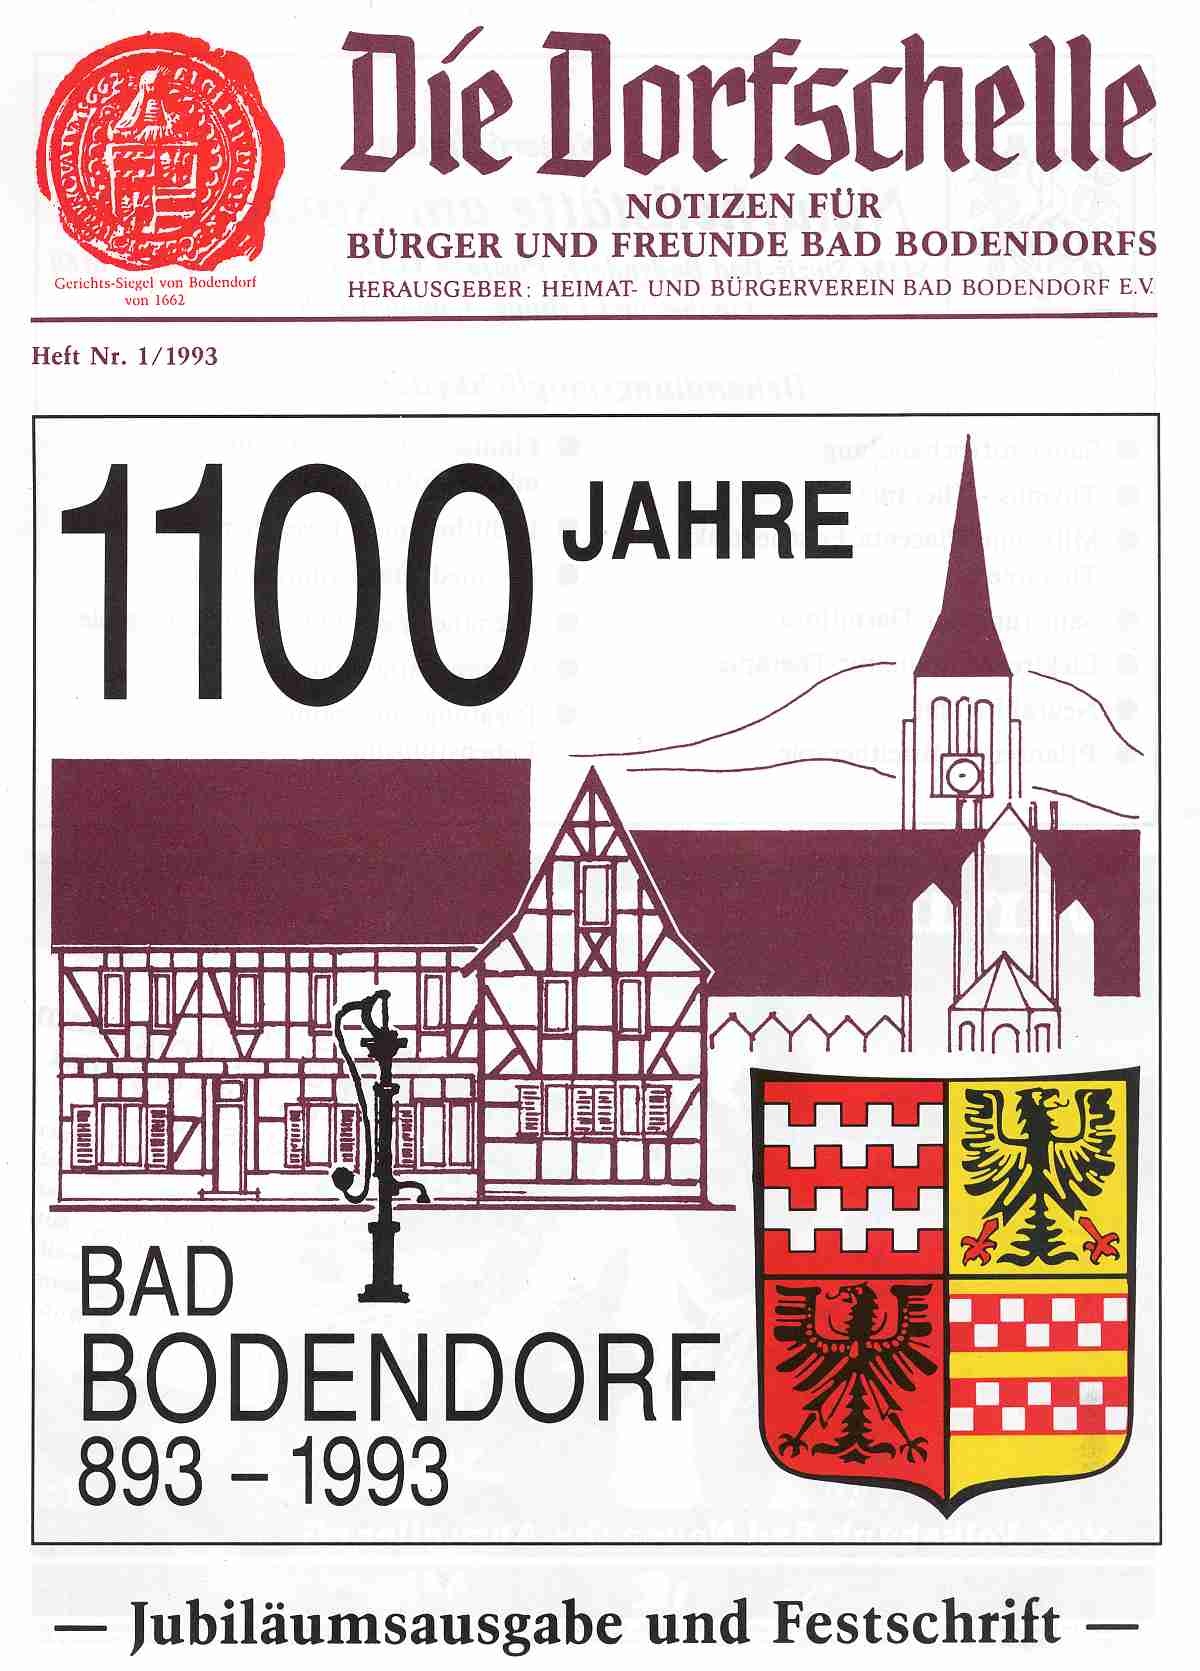 Dorfschelle Bad Bodendorf - Jubiläumsausgabe und Festschrift zur 1100 Jahrfeier (Heimatmuseum und -Archiv Bad Bodendorf CC BY-NC-SA)